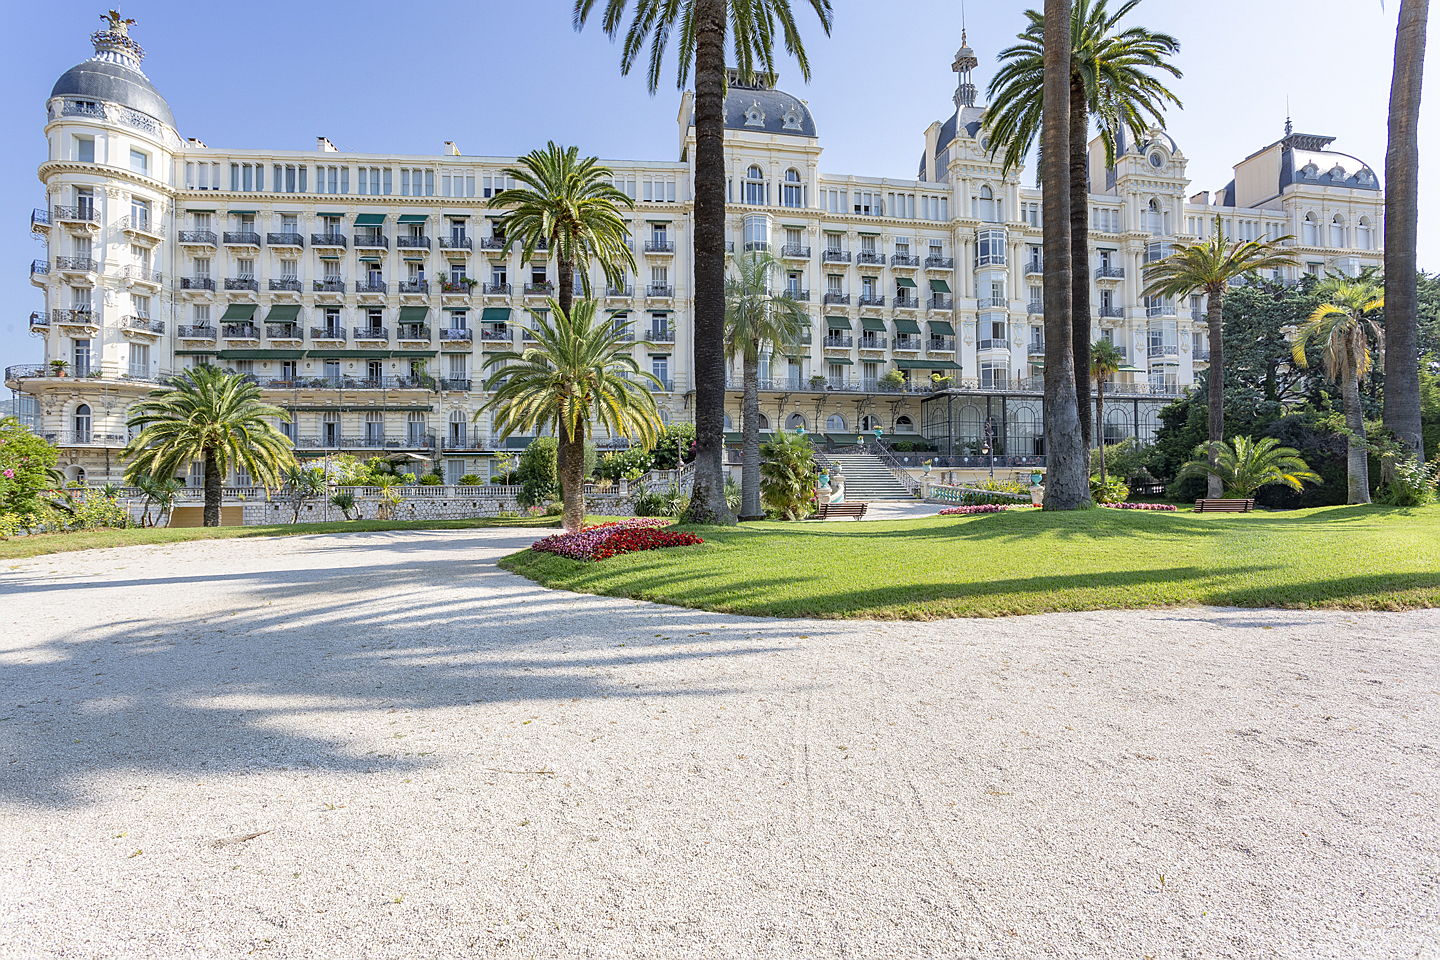  Cannes
- Palais Regina à Nice